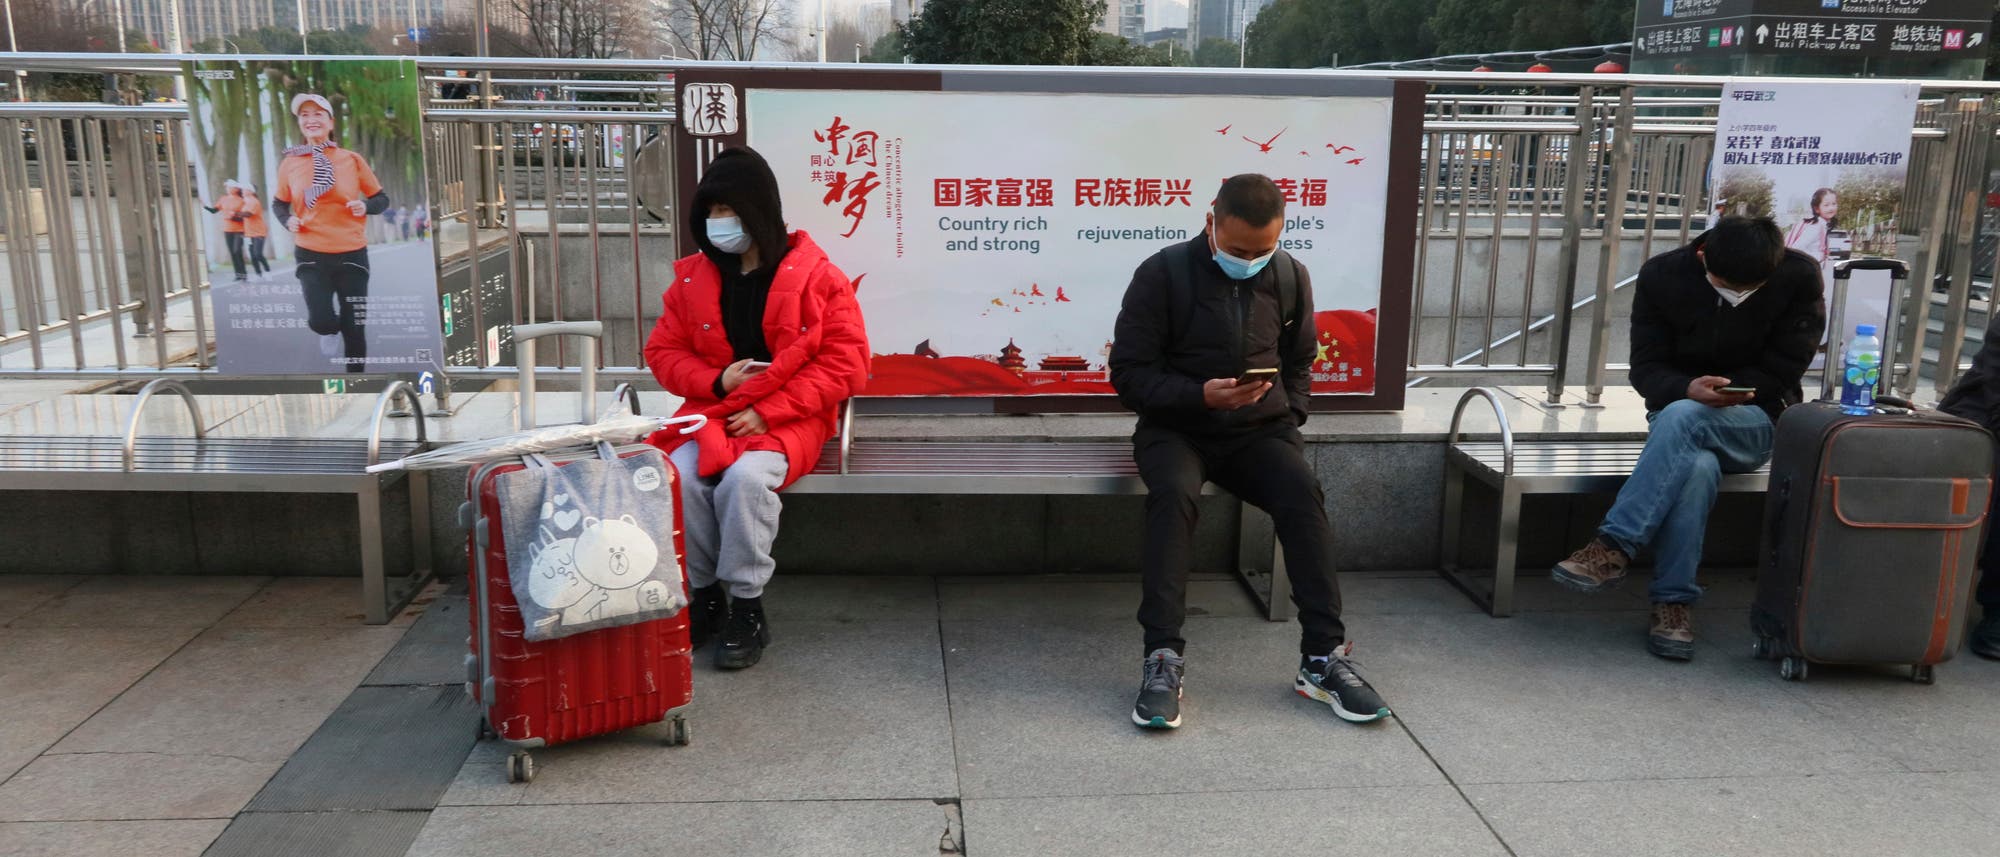 Menschen mit Masken sind am 5. Februar 2021 in der Nähe des Bahnhofs Hankou in Wuhan City, Provinz Hubei, China.